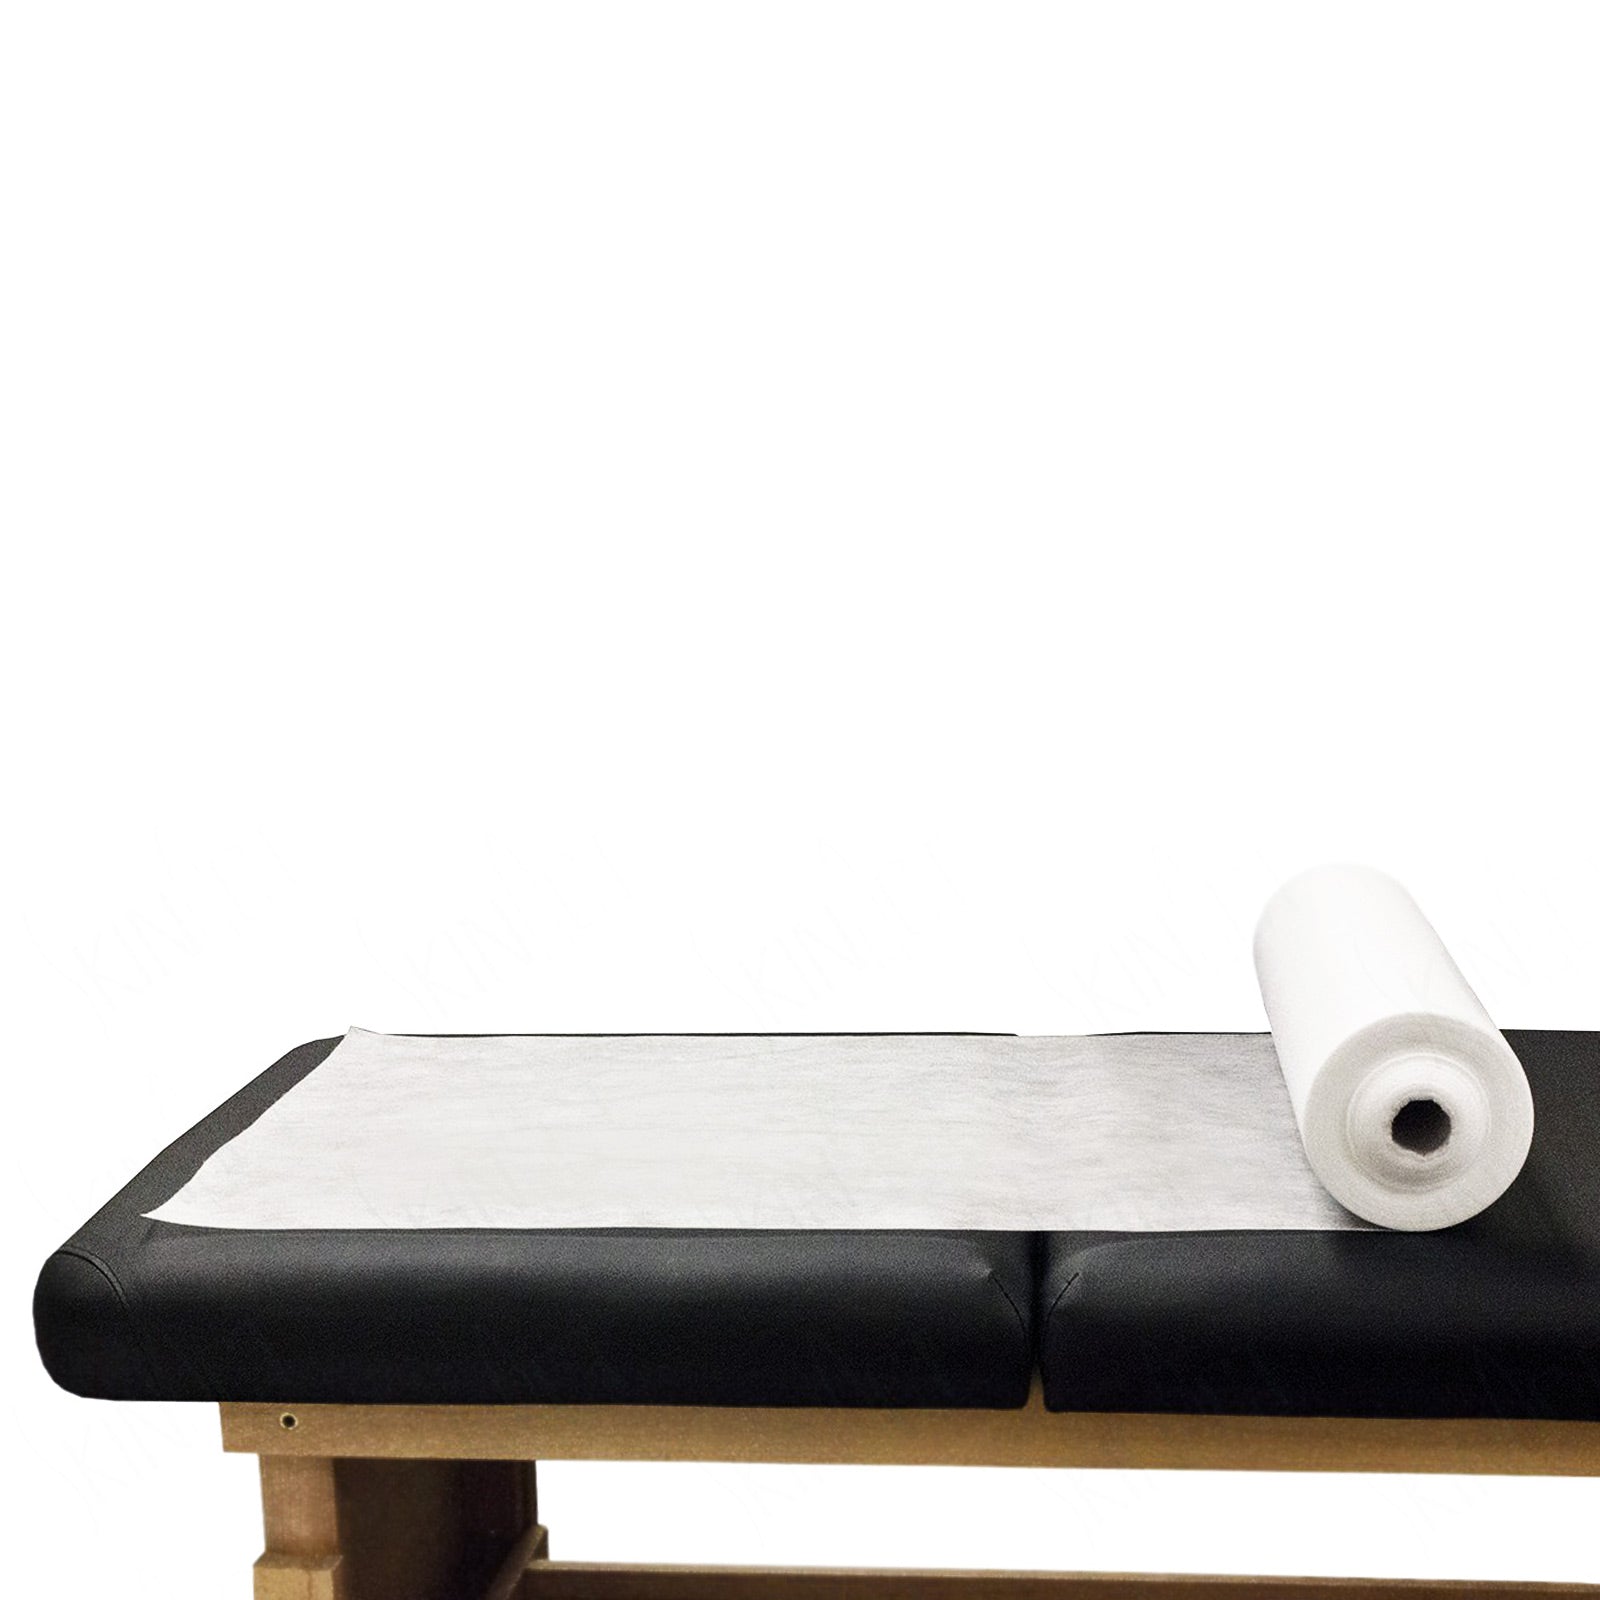 Forever Beauty 2 Rolls / 90pcs Disposable Massage Table Sheet Cover 180cm x 80cm Deals499